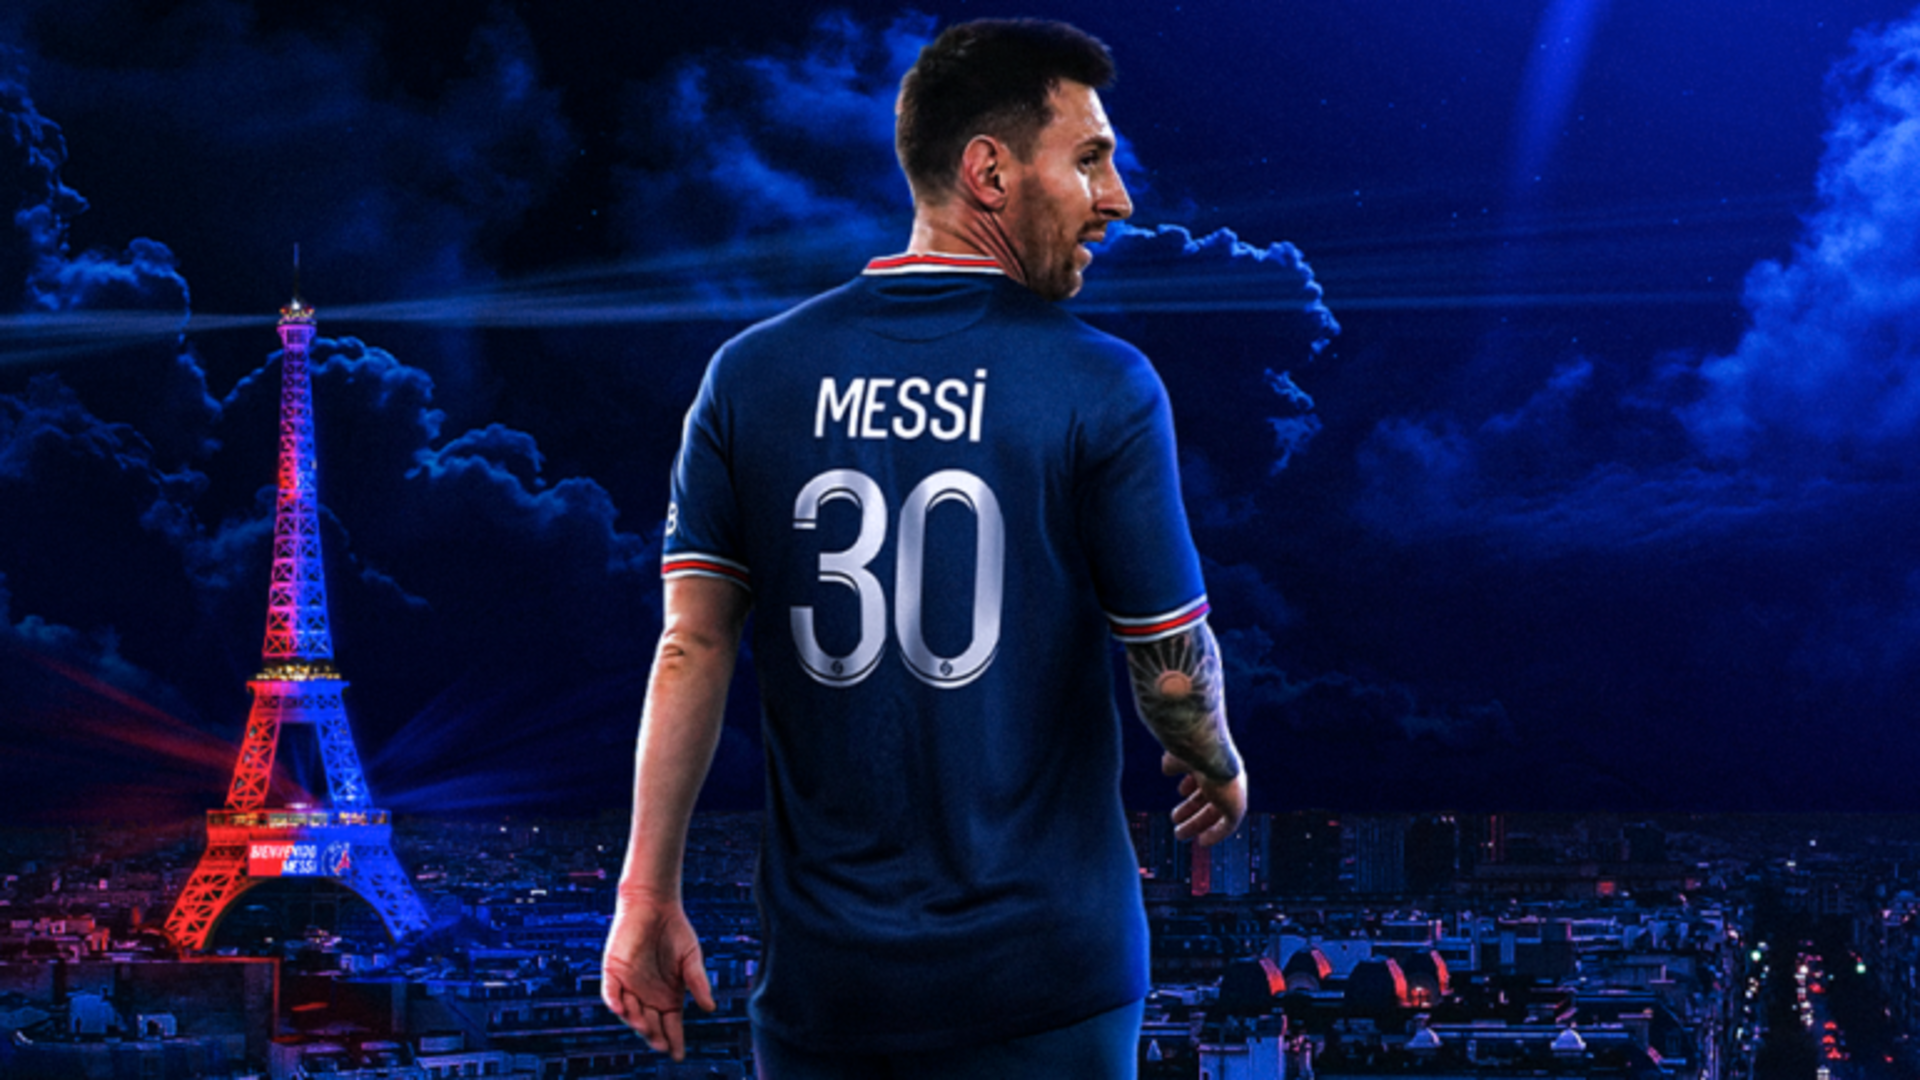 Messi HD Wallpaper: Cùng thưởng thức những hình nền Messi độ phân giải cao nhất, cho thật nhiều khung hình đẹp mắt và sống động trên màn hình của bạn. Hãy để bức hình của Messi đưa bạn vào thế giới bóng đá đỉnh cao!